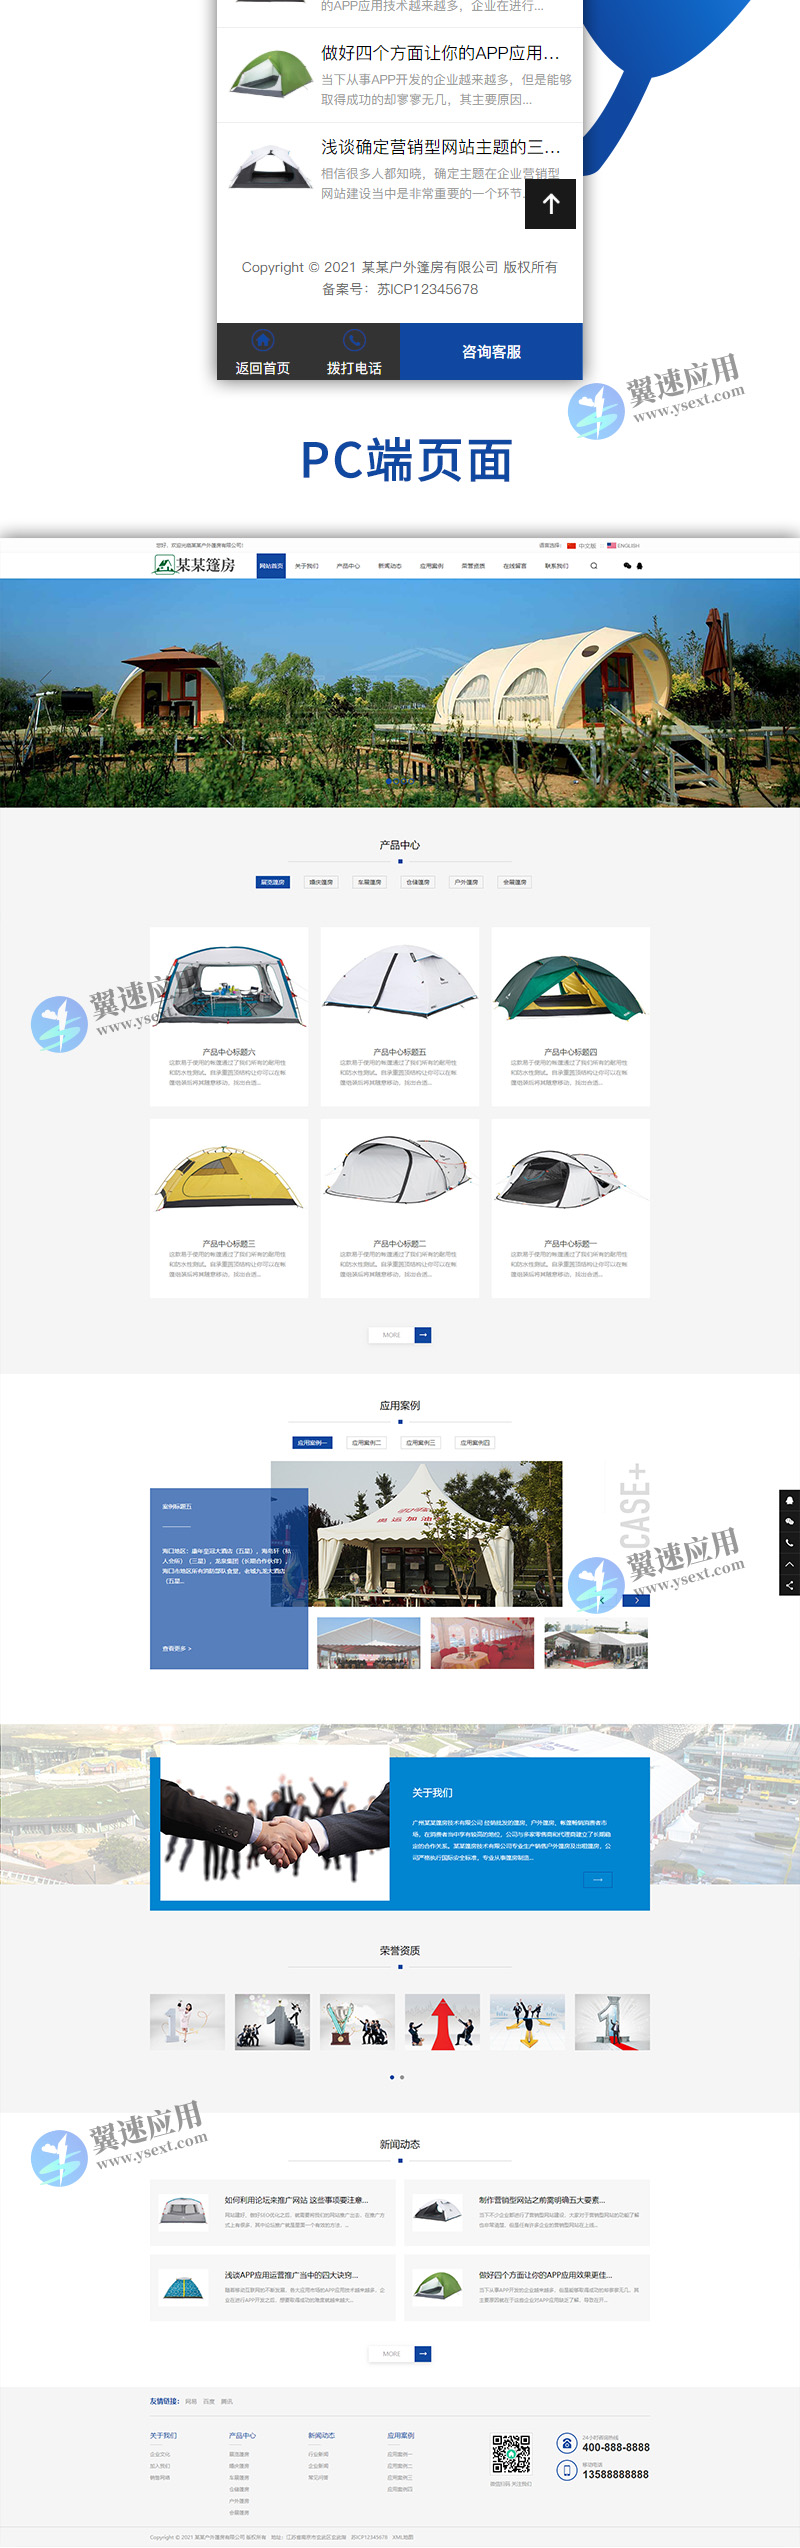 双语户外篷房帐篷睡袋类网站2.jpg